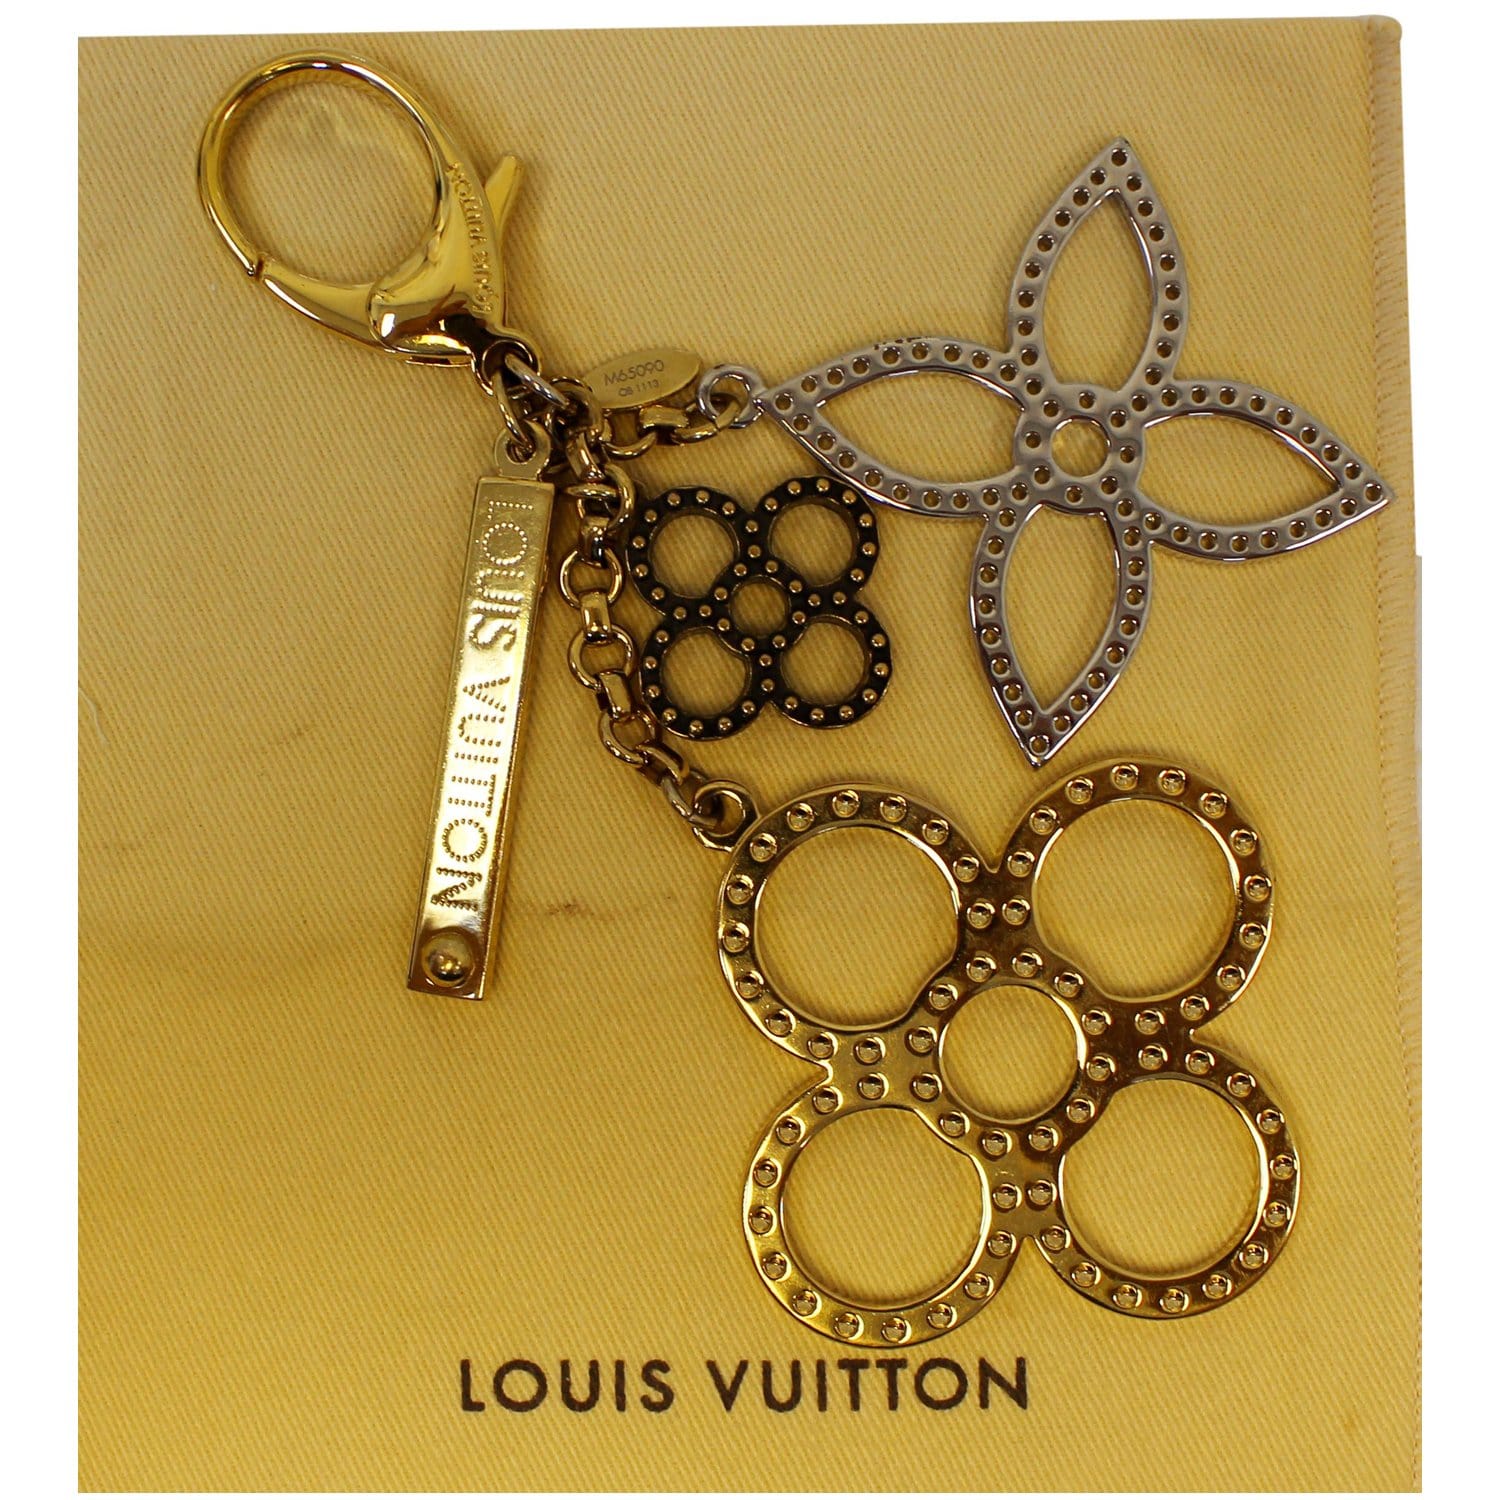 LOUIS VUITTON Bijoux Sac Tabage Key Holder Bag Charm